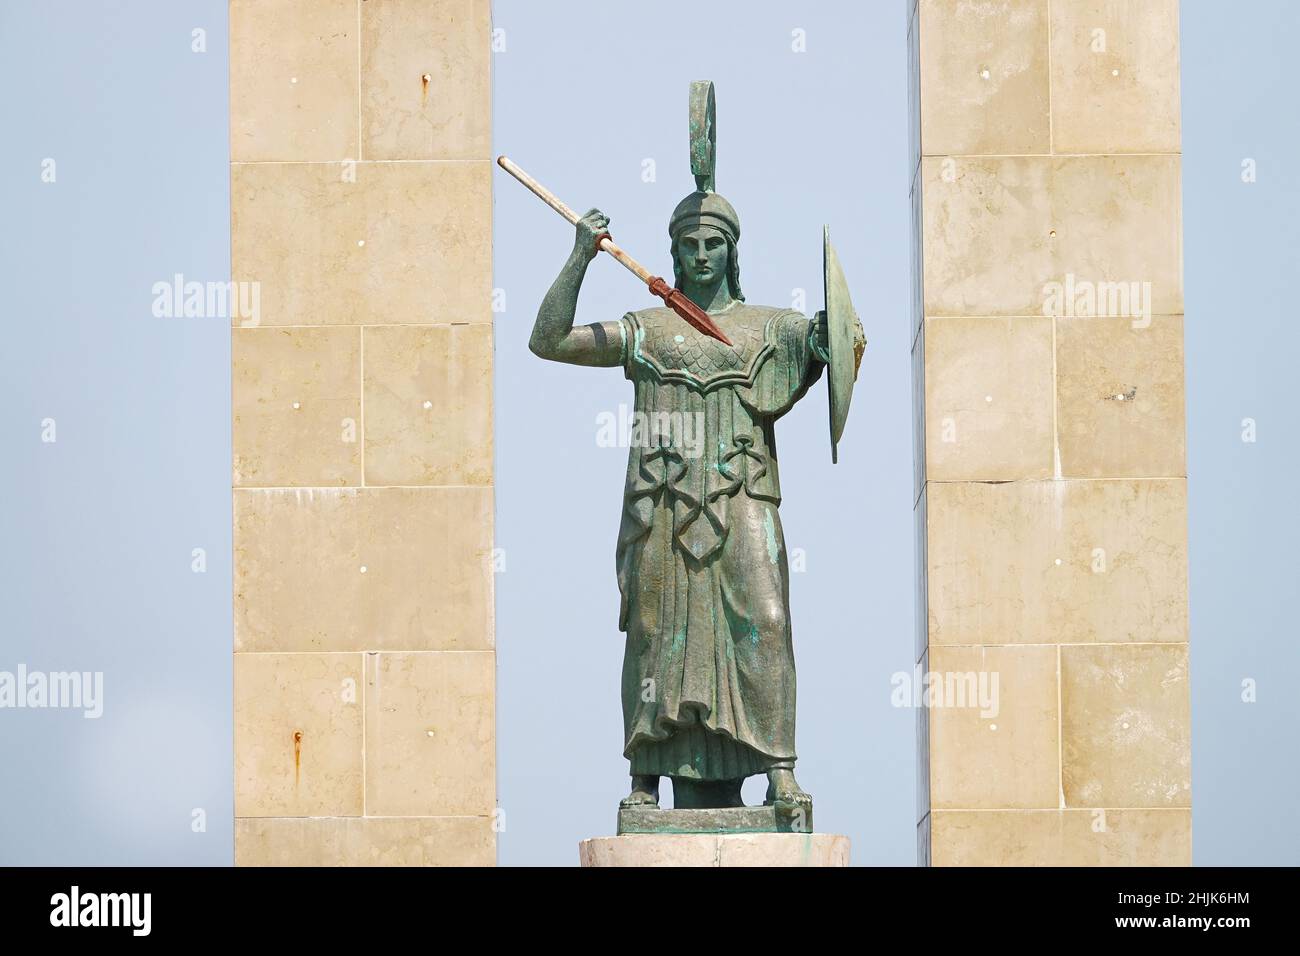 Statue der Göttin Athene und Denkmal für Vittorio Emanuele in der Arena dello Stretto in Reggio Calabria, Italien. Reggio Calabria, Italien - Juli 2021 Stockfoto